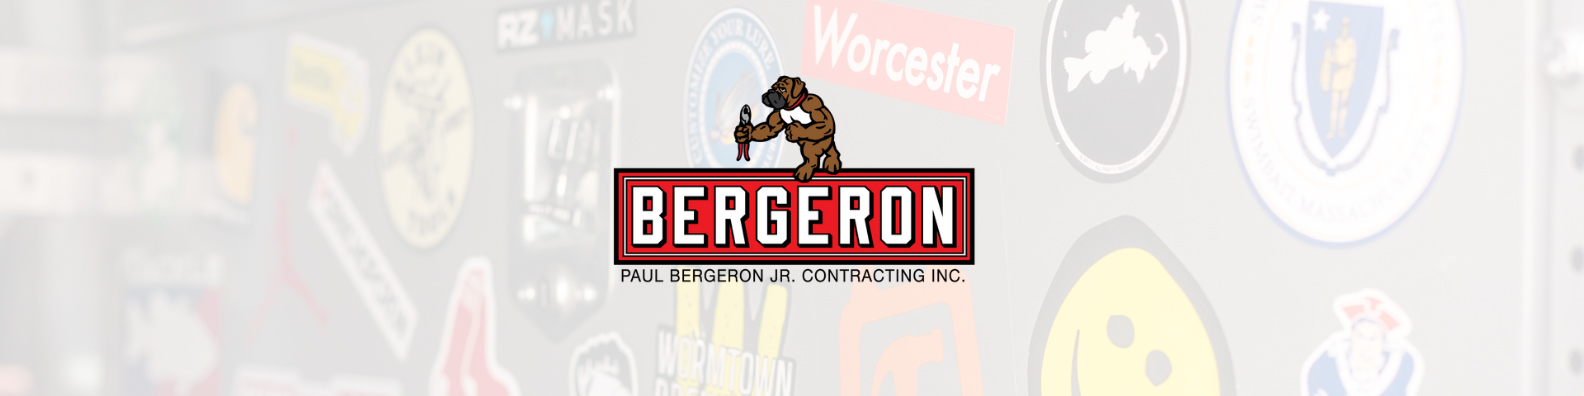 Paul Bergeron Jr. Contracting Inc.